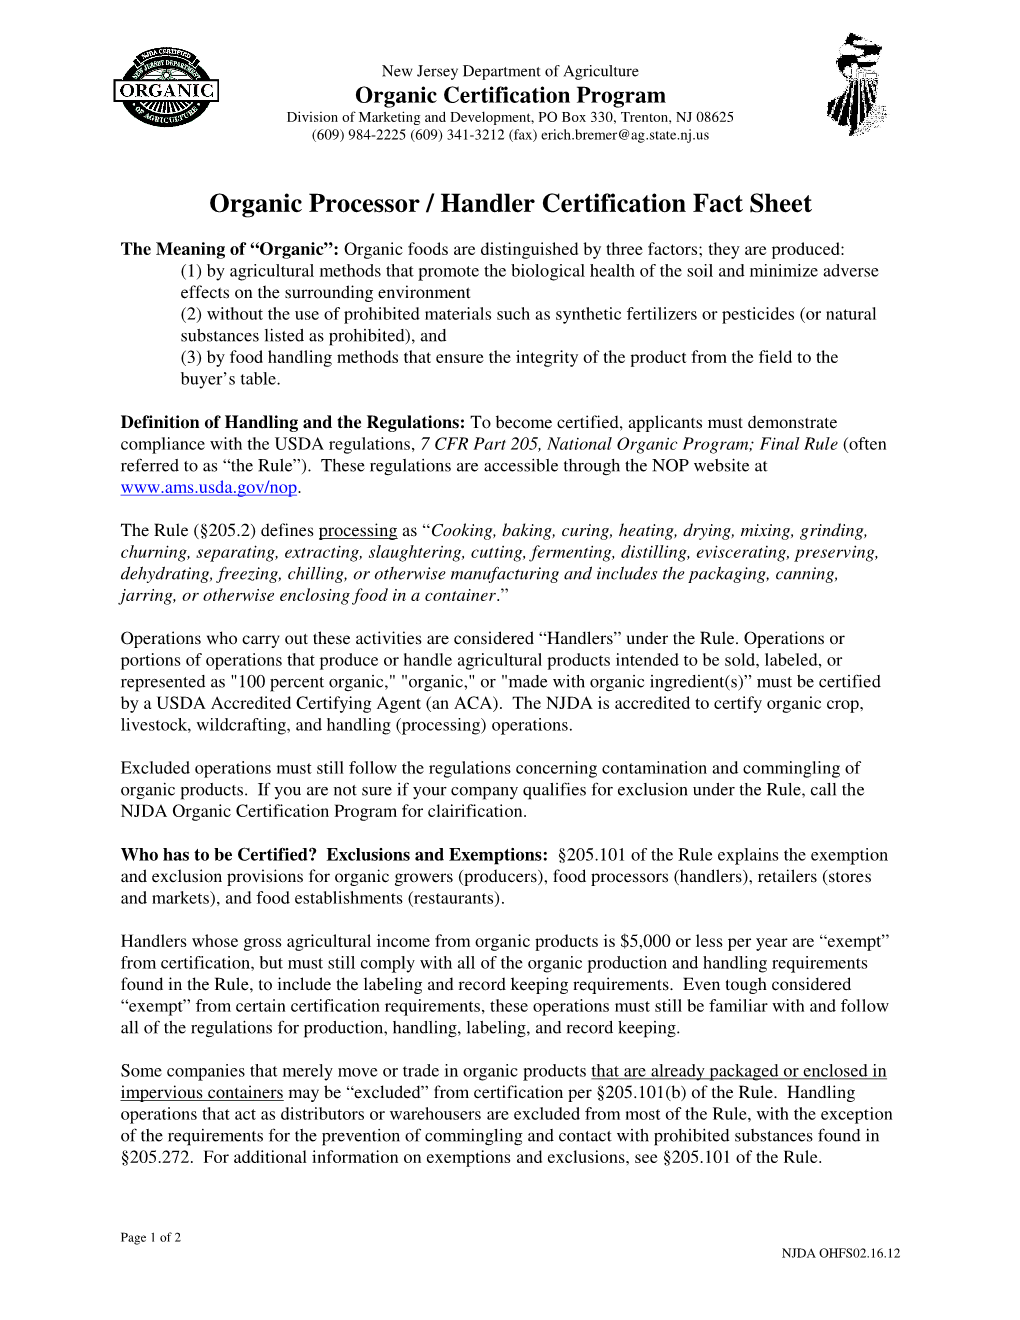 Organic Processor / Handler Certification Fact Sheet